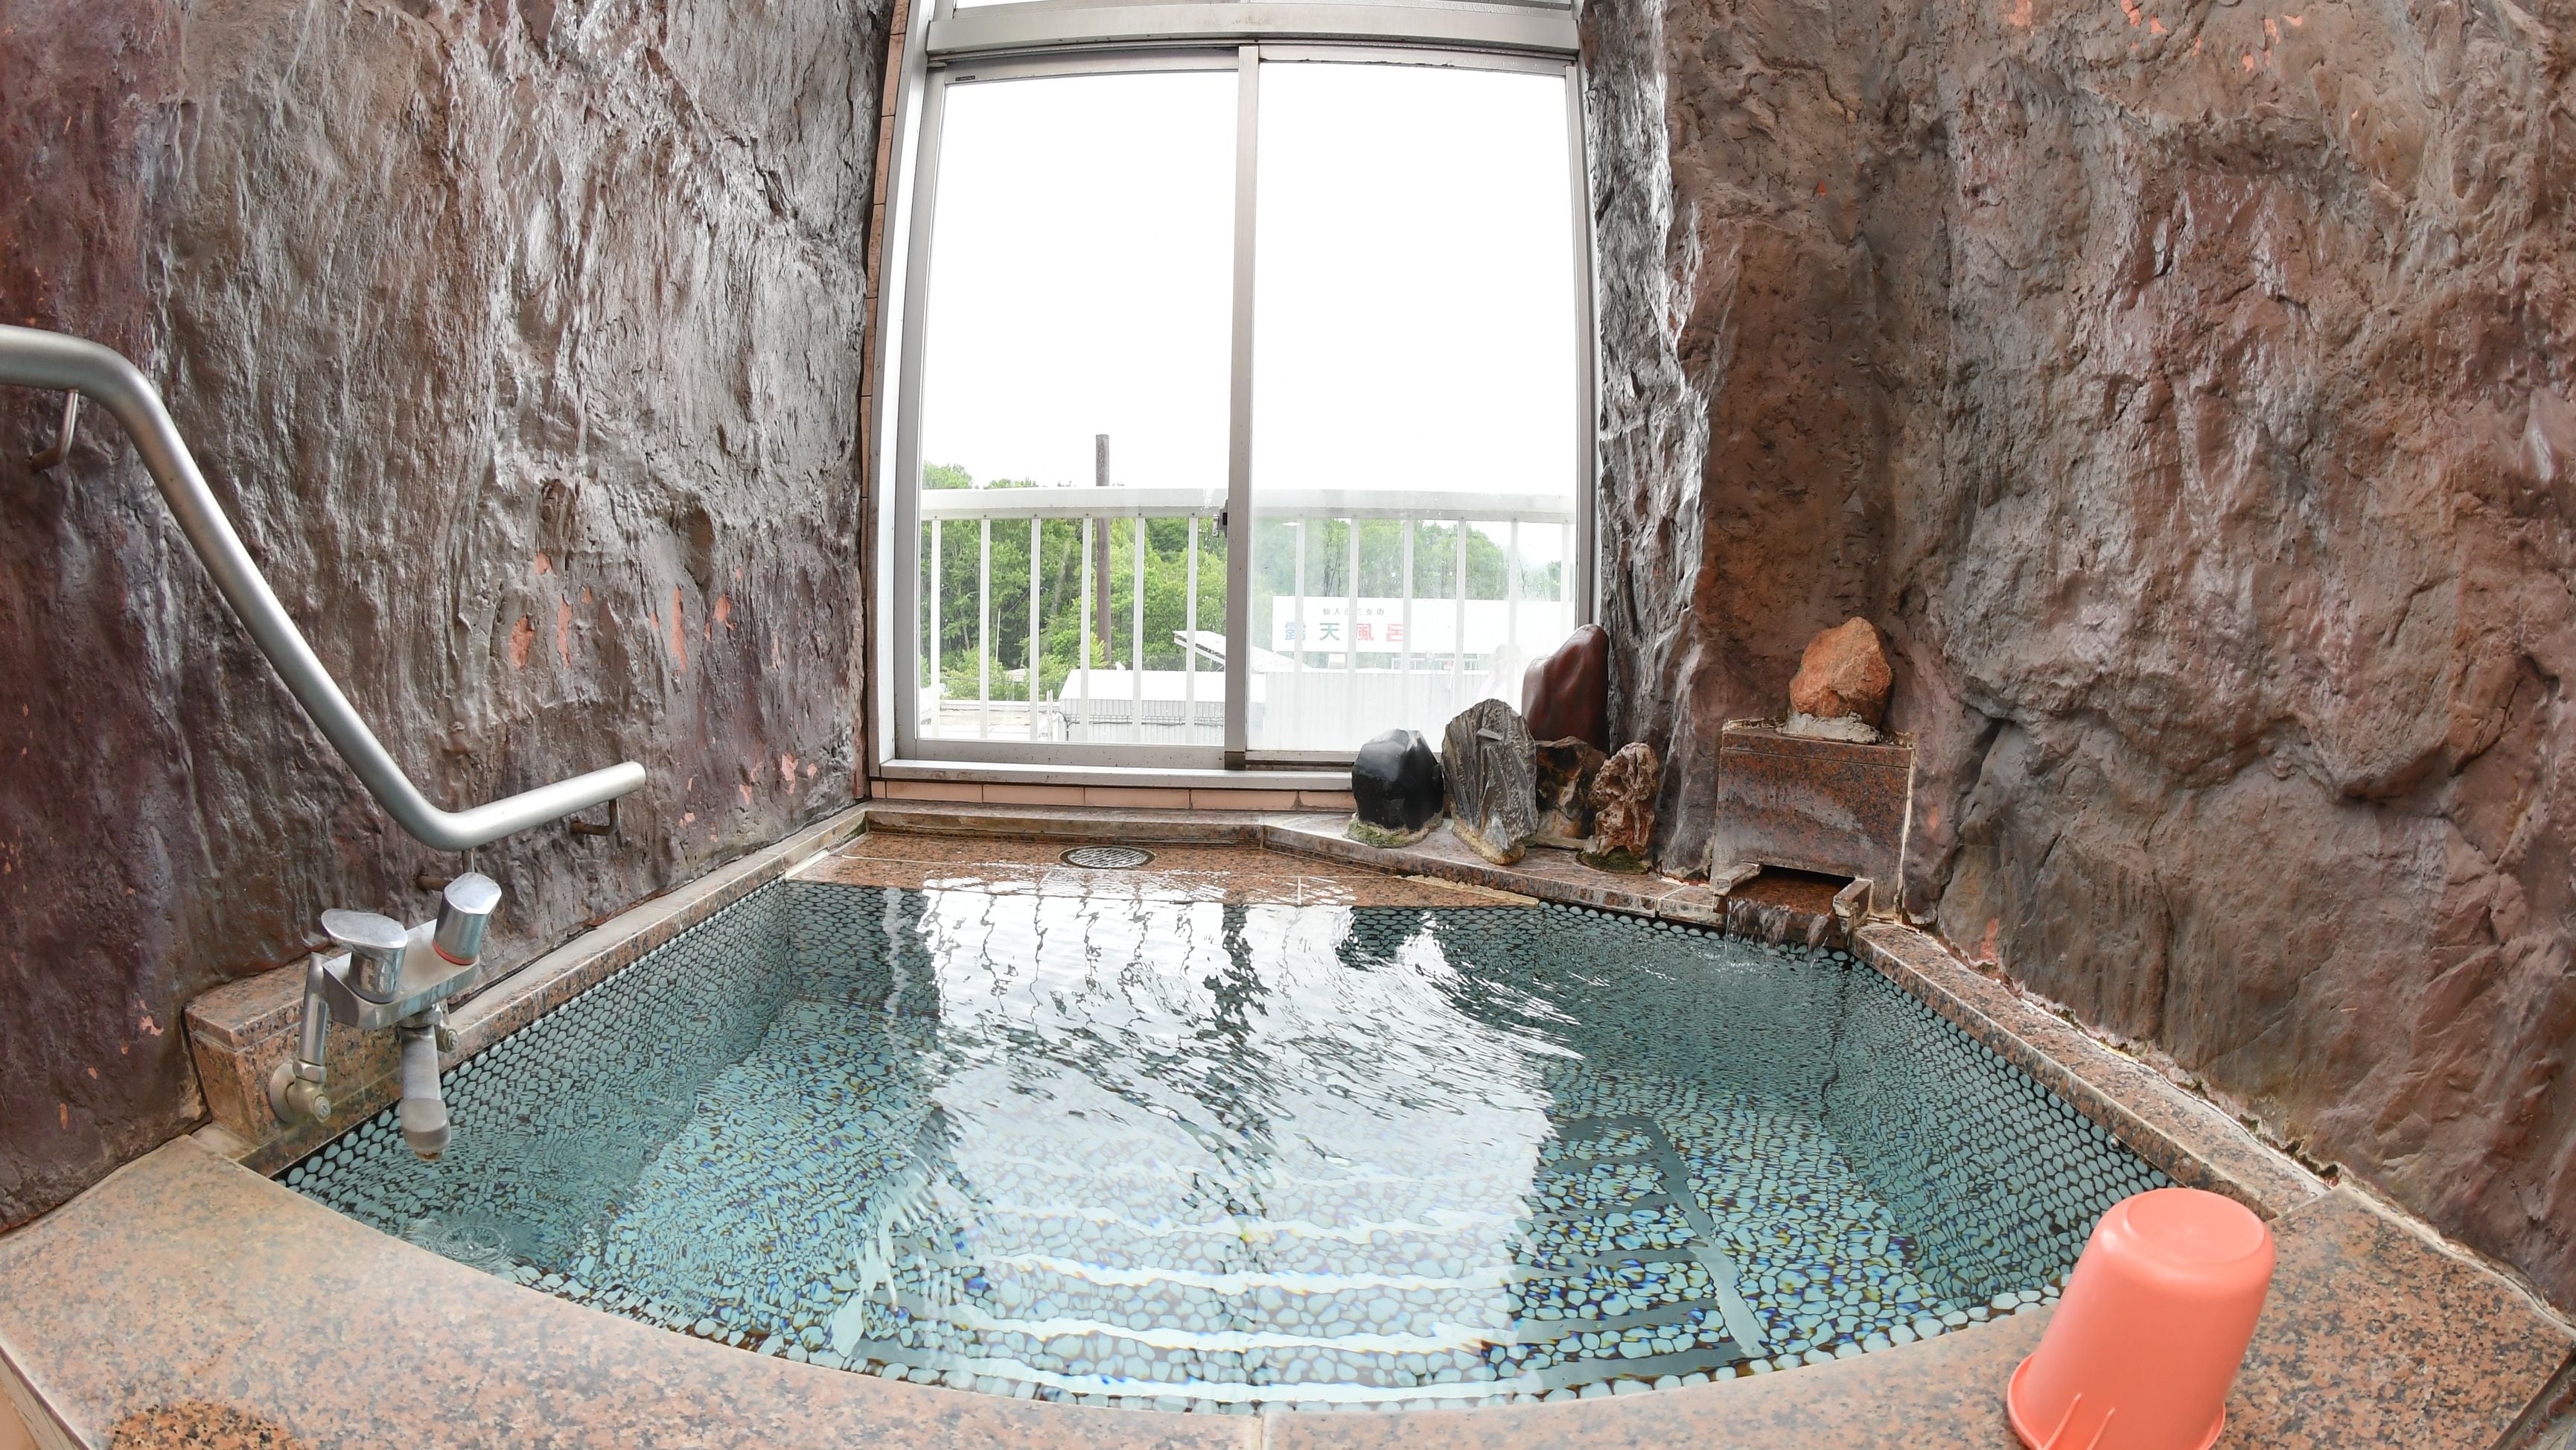 ◆ 带岩浴的日式房间 浴缸的最佳景观。岩浴是天然温泉。